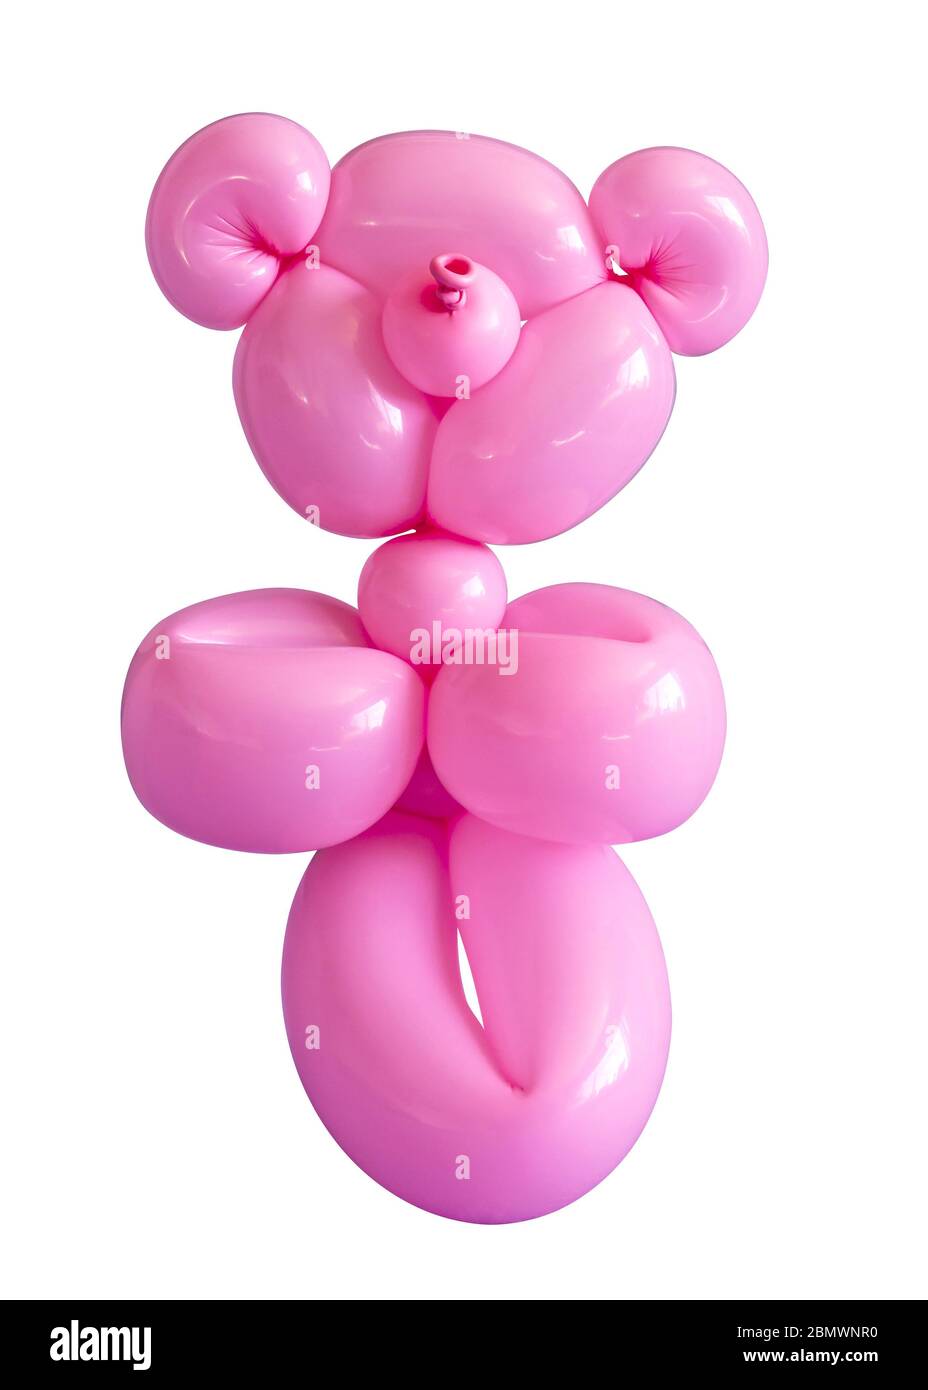 Giocattolo da festa con palloncino orsacchiato rosa scolpito isolato su sfondo bianco Foto Stock